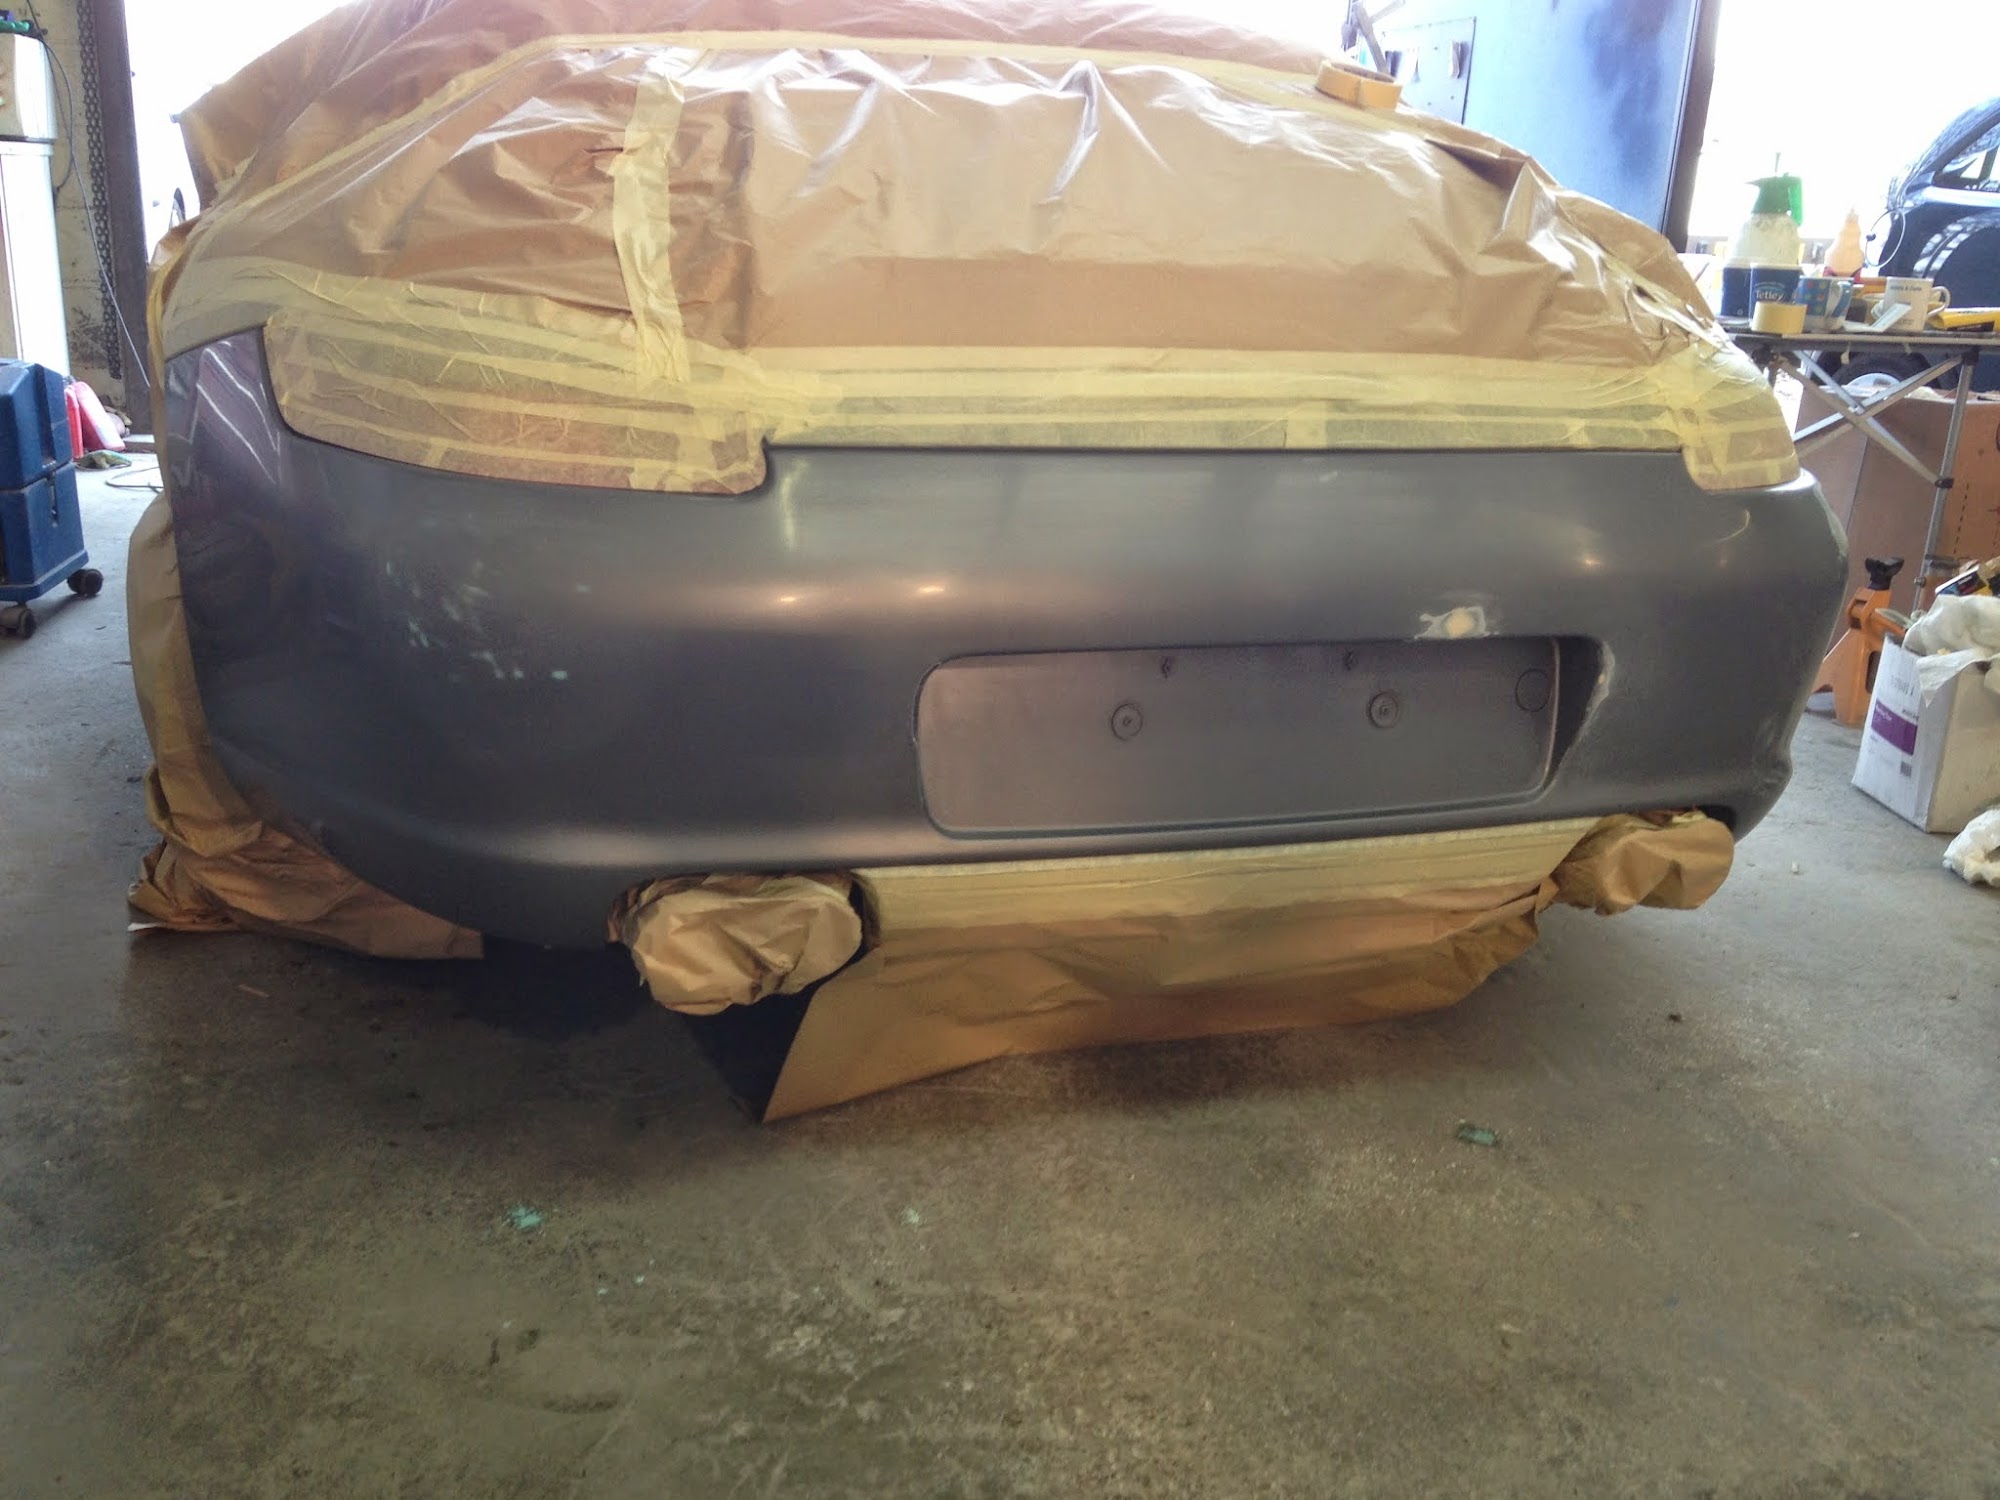 Chepstow car body repairs